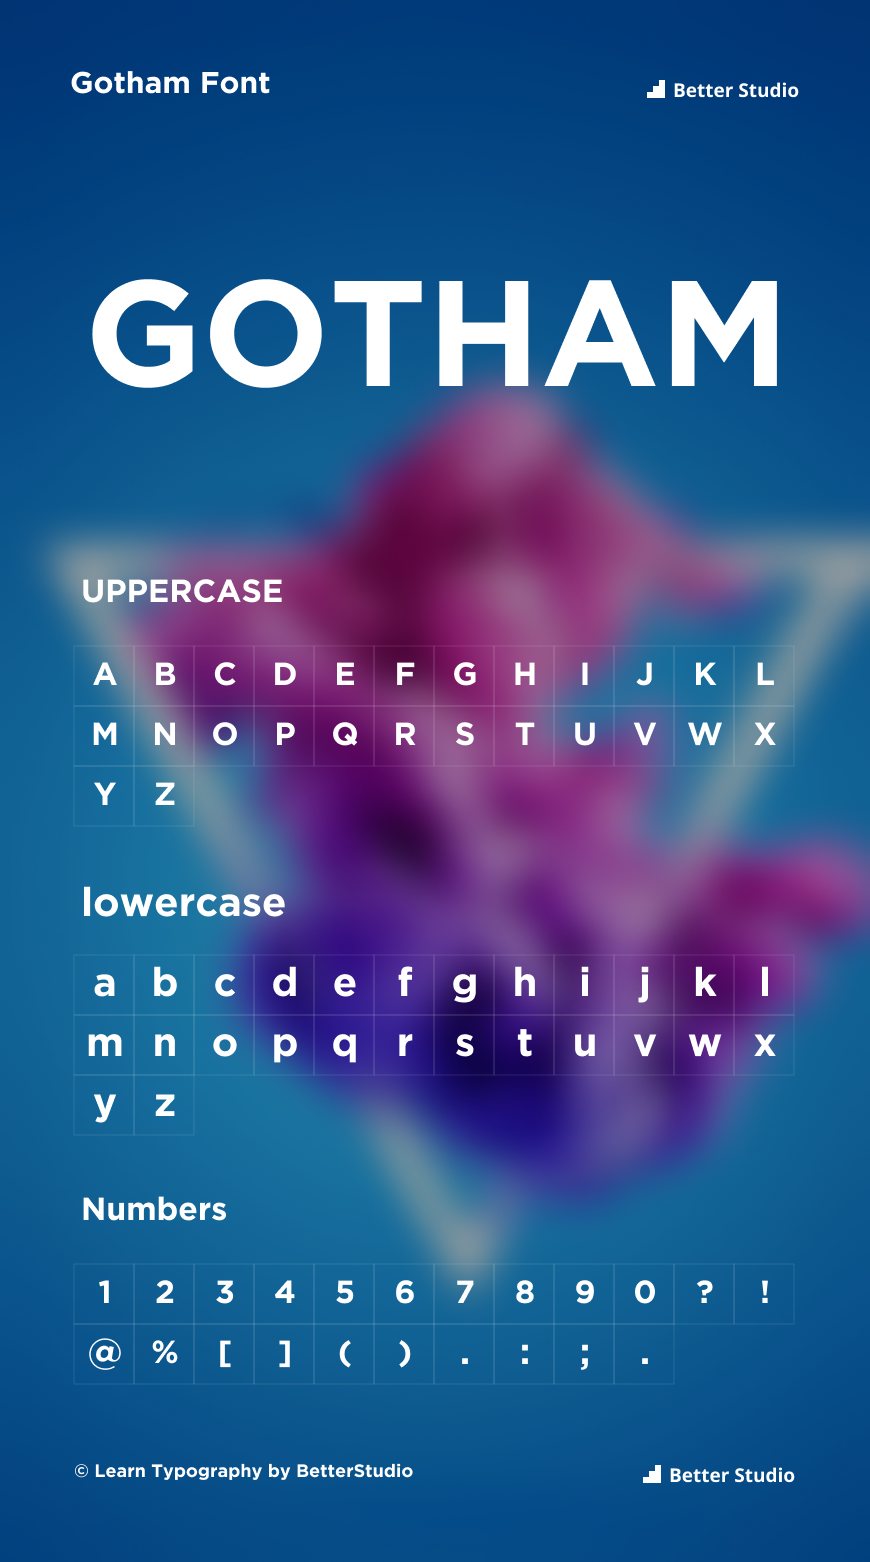 download gotham font for adobe illustrator